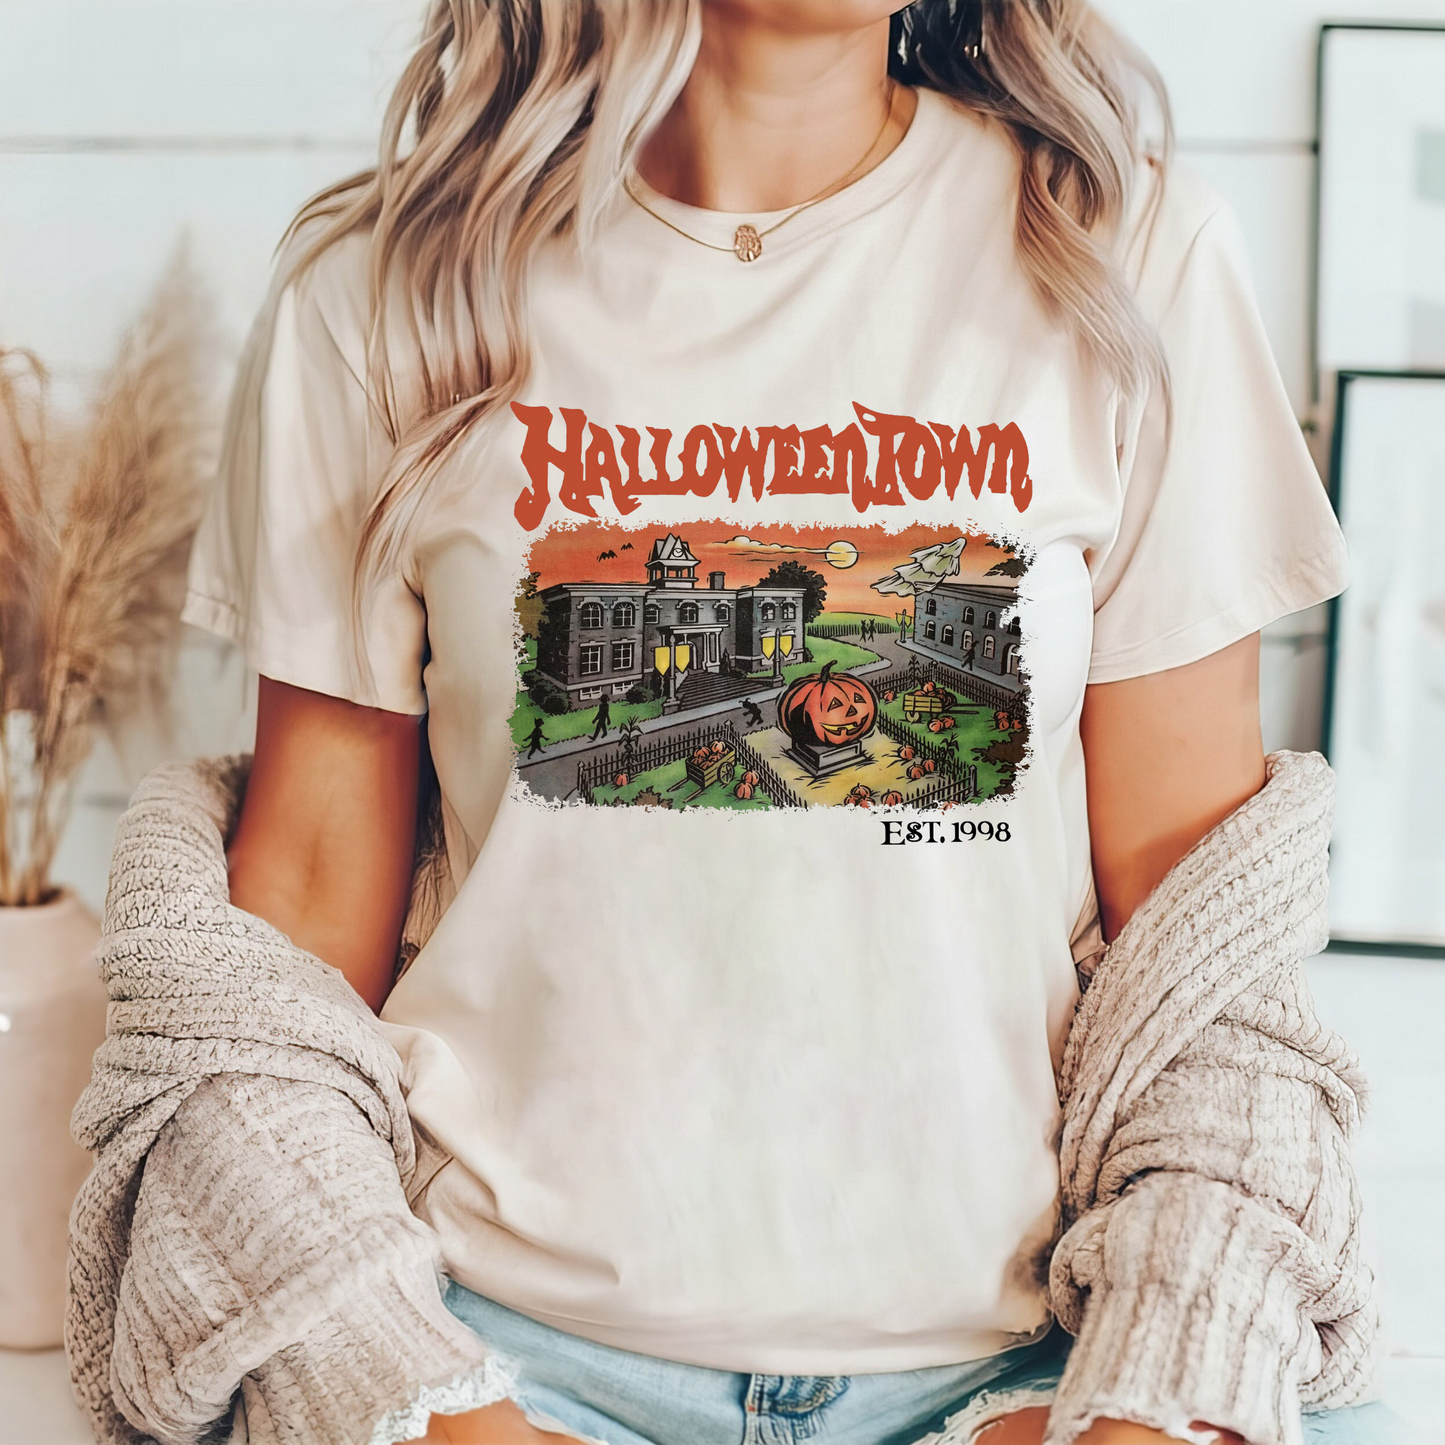 Halloweentown University Sweatshirt 1998 - Geschenk für Herbst- und Halloween-Fans